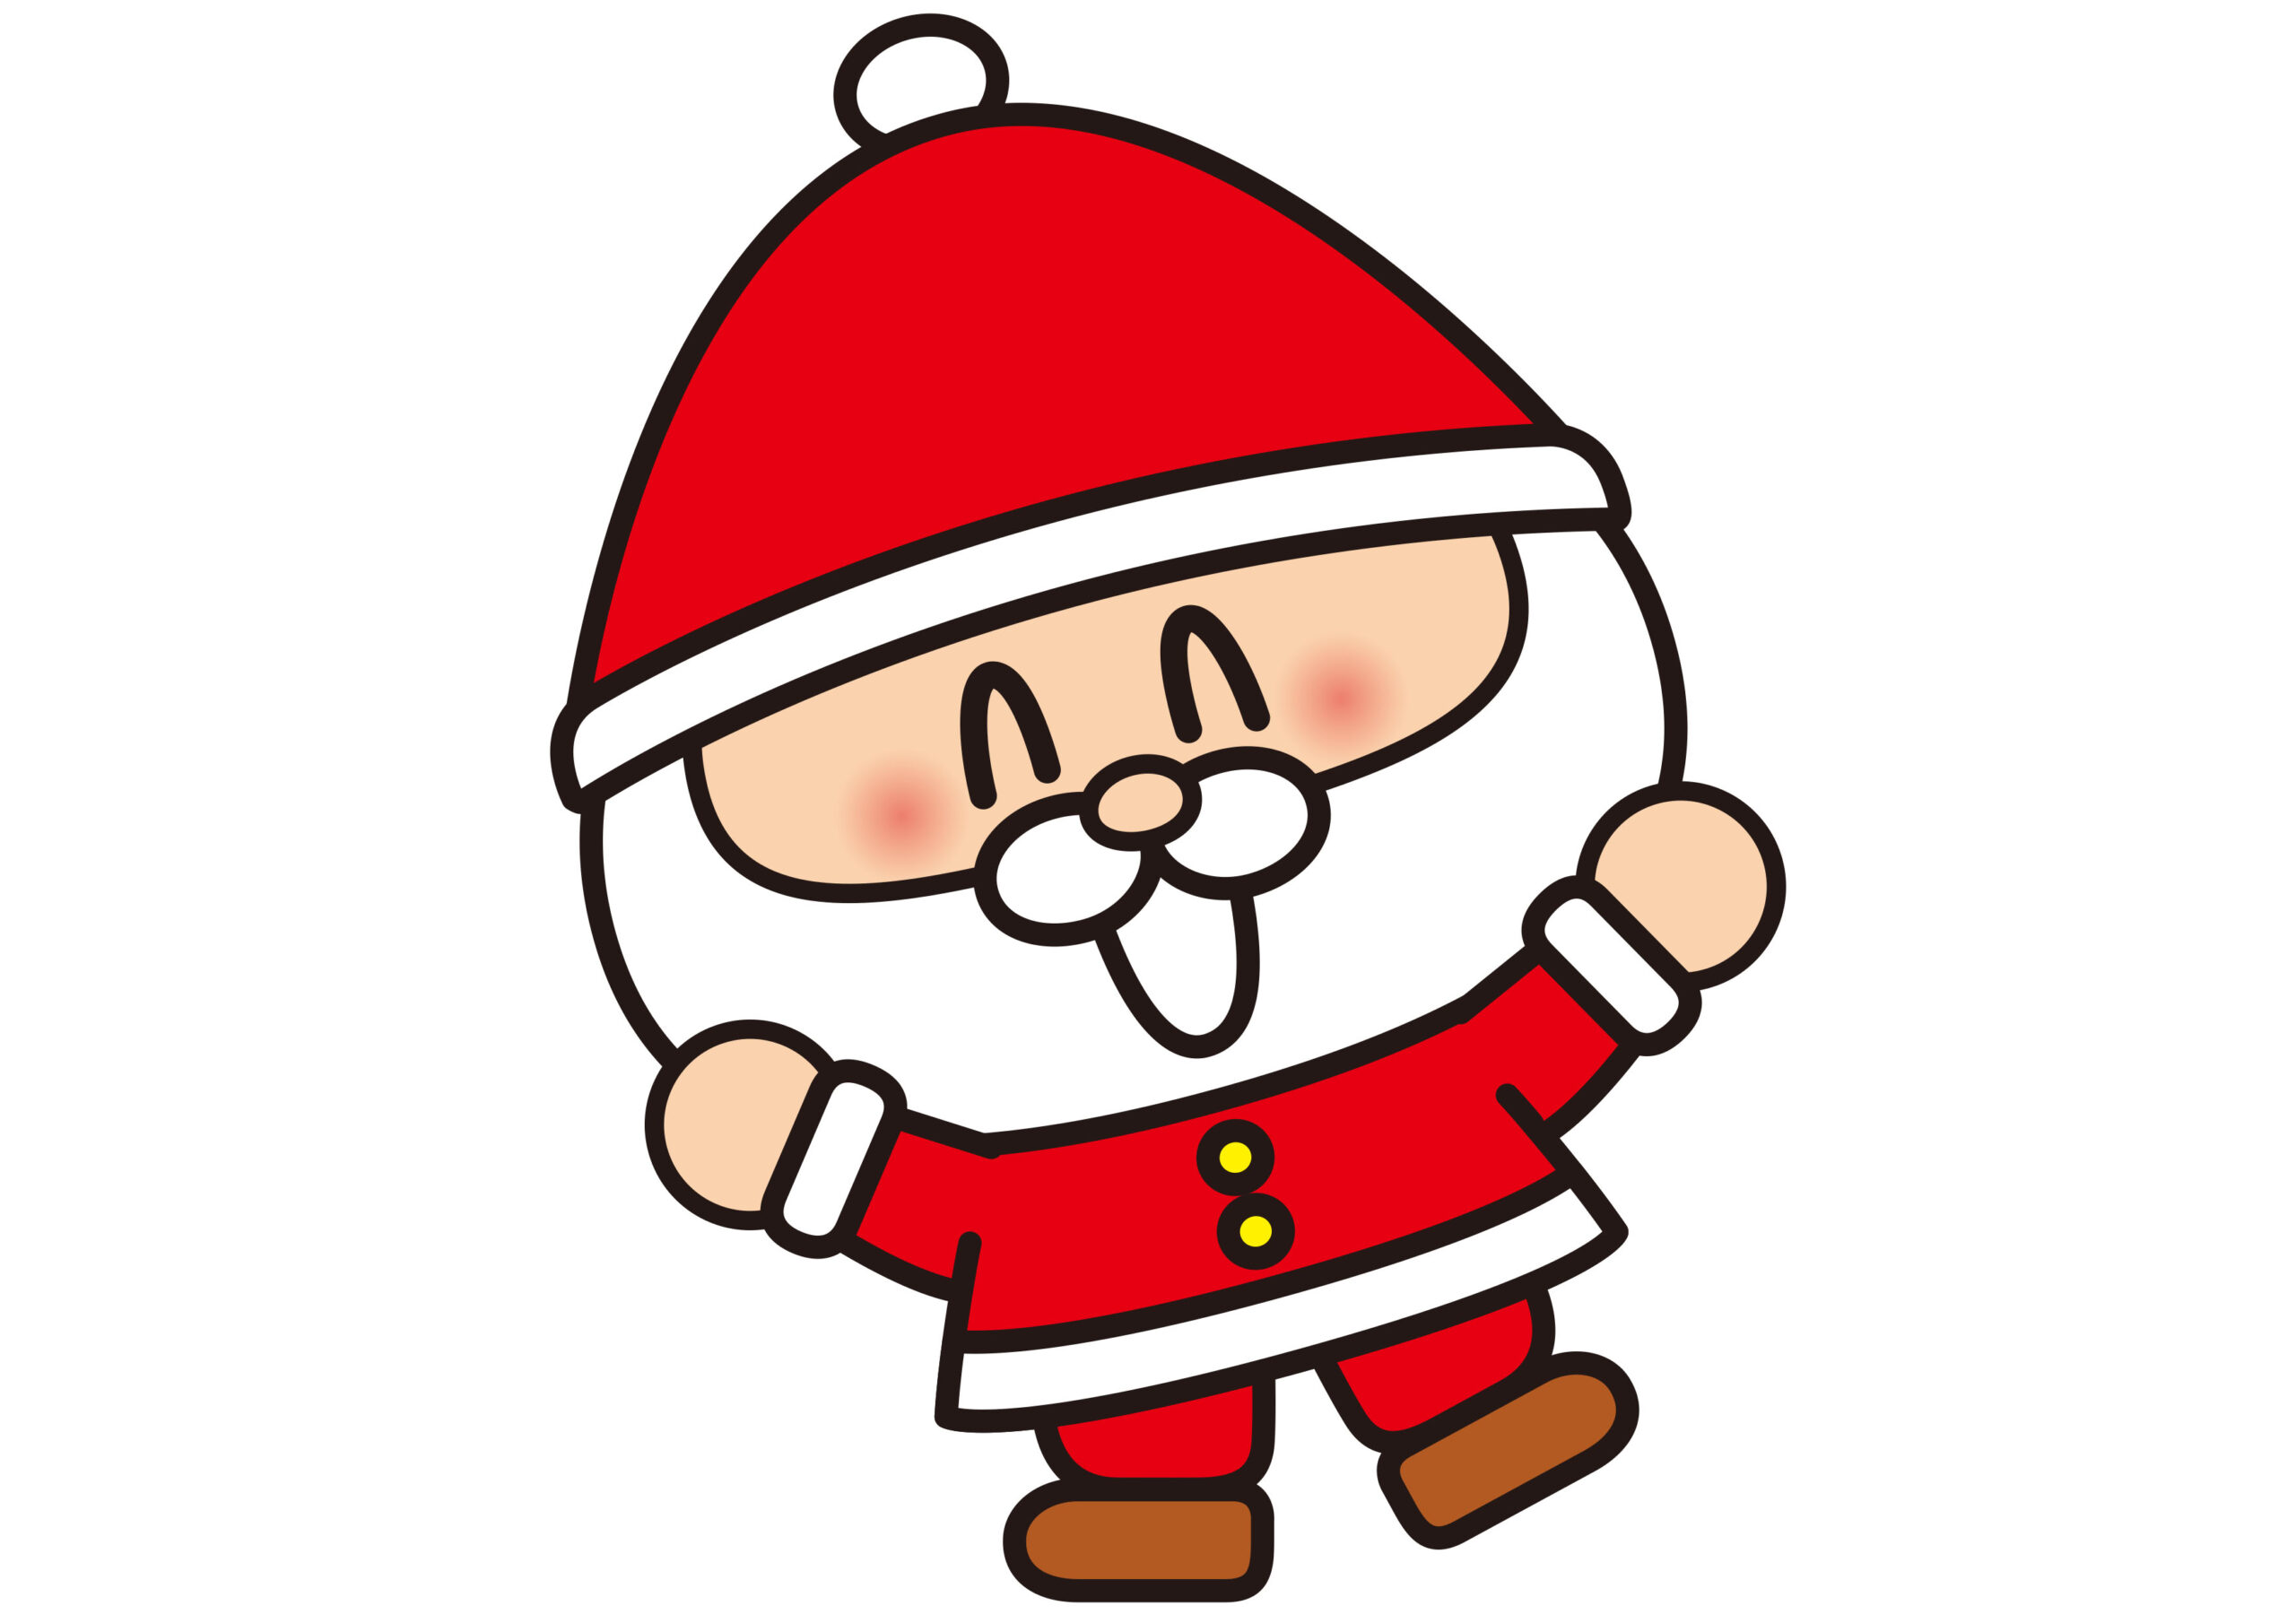 《〜12月25日まで》東近江大凧会館で「クリスマスの凧展」が開催中！小学生以下のお子様には”サンタクロースの歩行凧”のプレゼントもあり♪